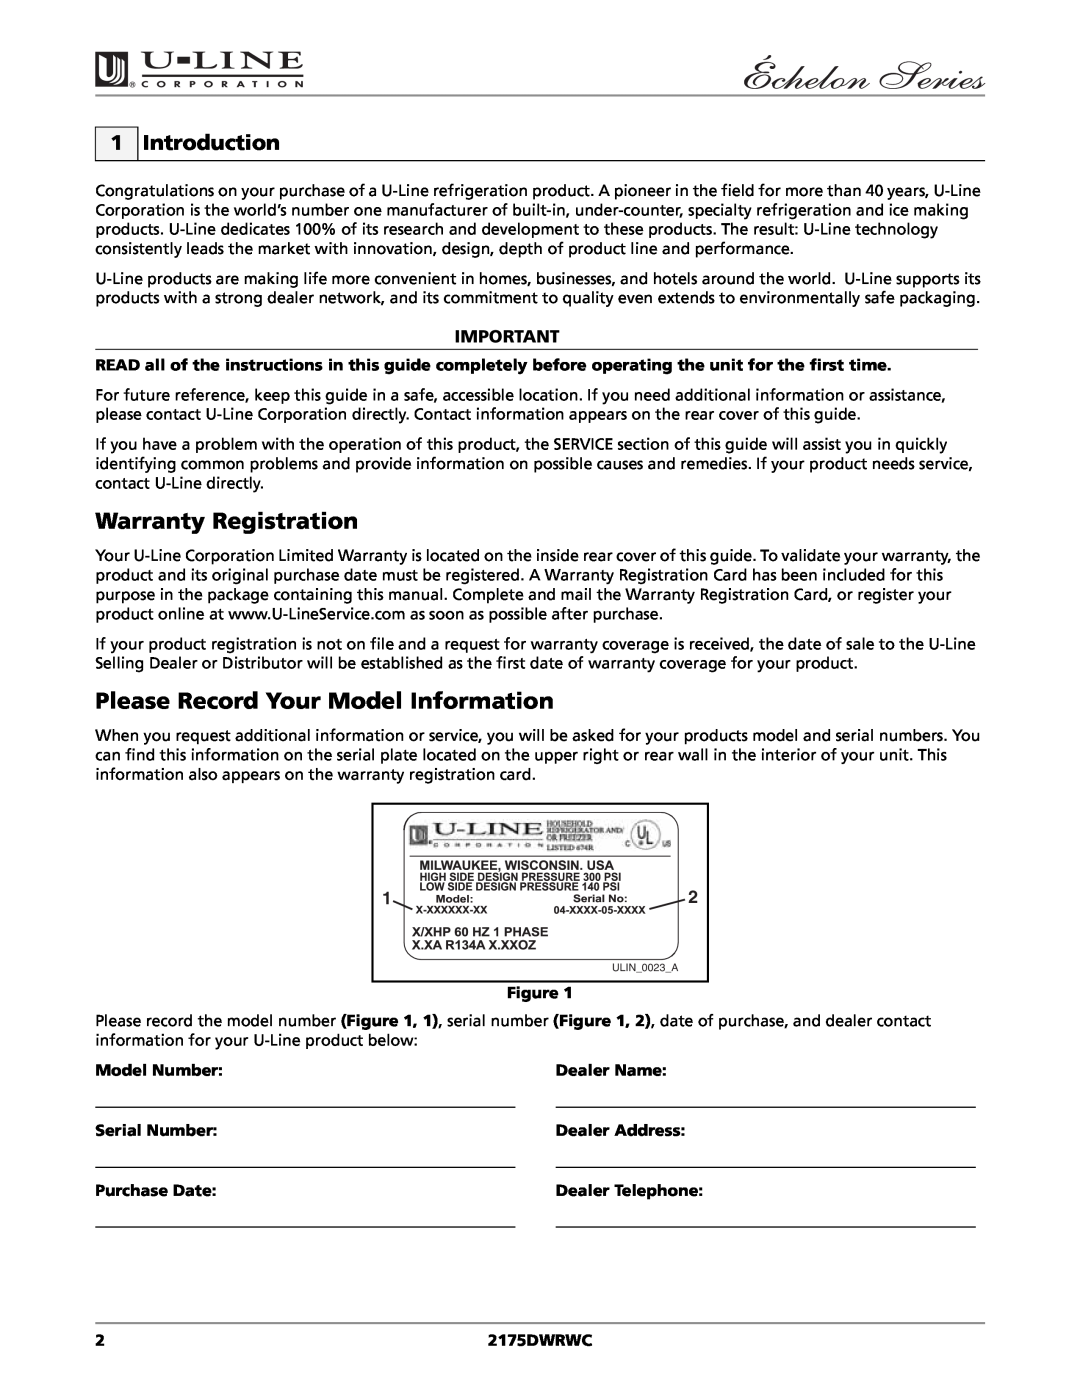 U-Line 2175DWRWC Warranty Registration, Please Record Your Model Information, Introduction, Model Number, Dealer Name 